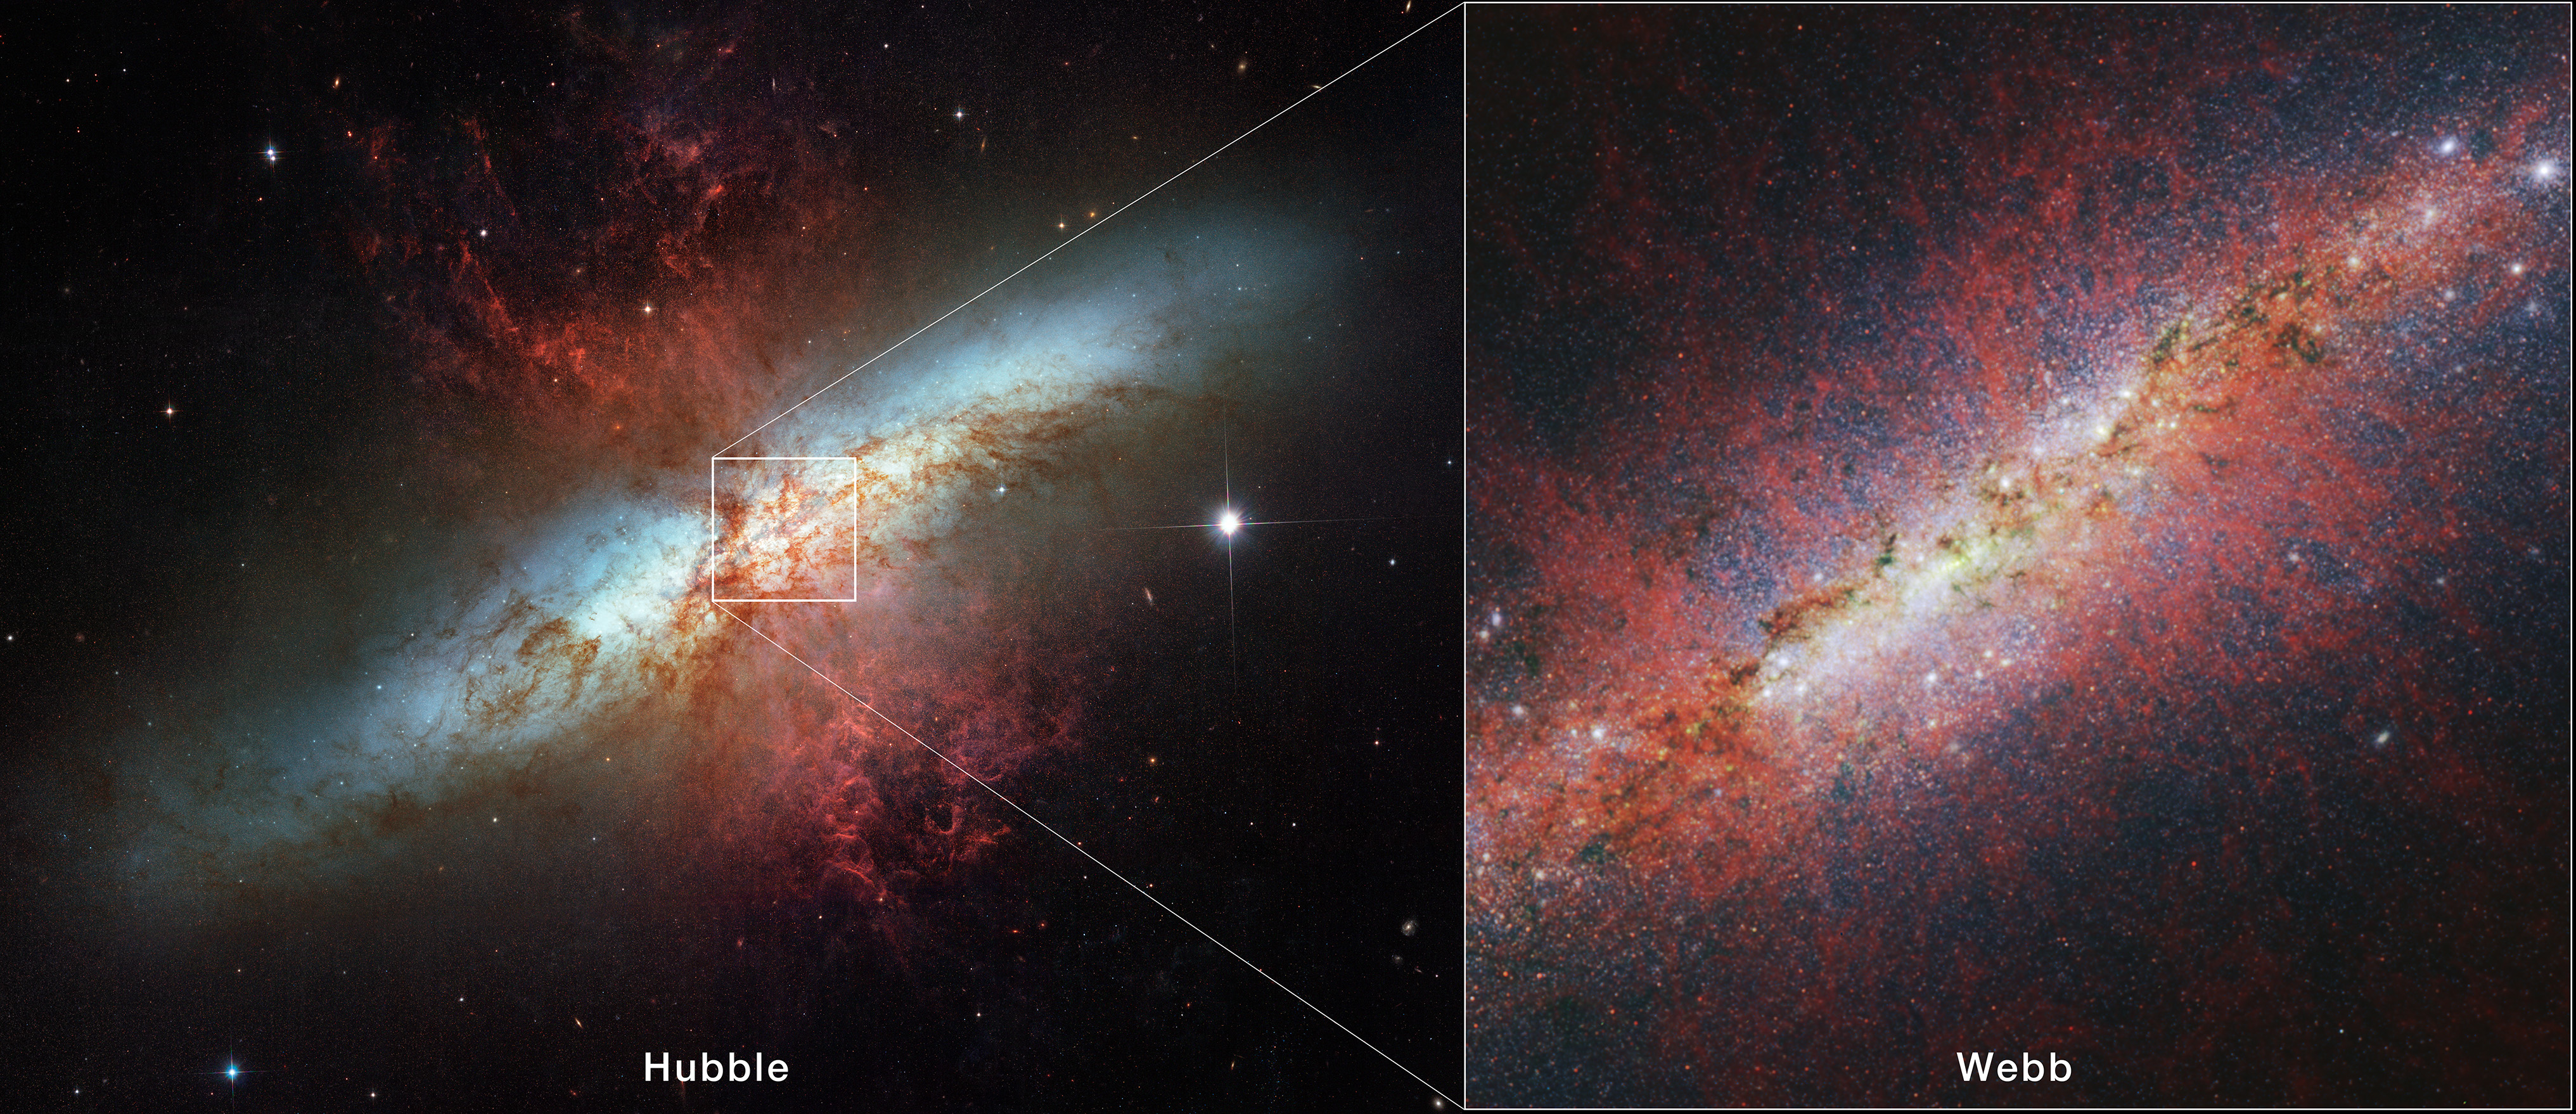 Izquierda: Messier 82 fotografiado por el Telescopio Espacial Hubble de la NASA. Columnas rojas de gas en forma de reloj de arena se disparan hacia afuera desde arriba y desde abajo de un centro azul brillante en forma de disco de una galaxia. Esta galaxia está rodeada de muchas estrellas blancas y se encuentra sobre el fondo negro del espacio. Un pequeño cuadrado resalta la sección que la imagen de la derecha muestra con mayor detalle. El texto blanco en la parte inferior dice " Hubble." Derecha: Una sección de Messier 82 fotografiada por el telescopio espacial James Webb de la NASA. Una galaxia espiral de canto con un núcleo blanco brillante y brillante sobre el fondo negro del espacio. Una banda blanca del disco de canto se extiende desde la parte inferior izquierda hasta la parte superior derecha. Zarcillos de polvo de color marrón oscuro se esparcen finamente a lo largo de esta banda. Muchos puntos blancos de varios tamaños (estrellas o cúmulos estelares) están dispersos por toda la imagen, pero están más concentrados hacia el centro. Muchos filamentos rojos grumosos se extienden verticalmente por encima y por debajo del plano de la galaxia. El texto blanco en la parte inferior dice " Webb."